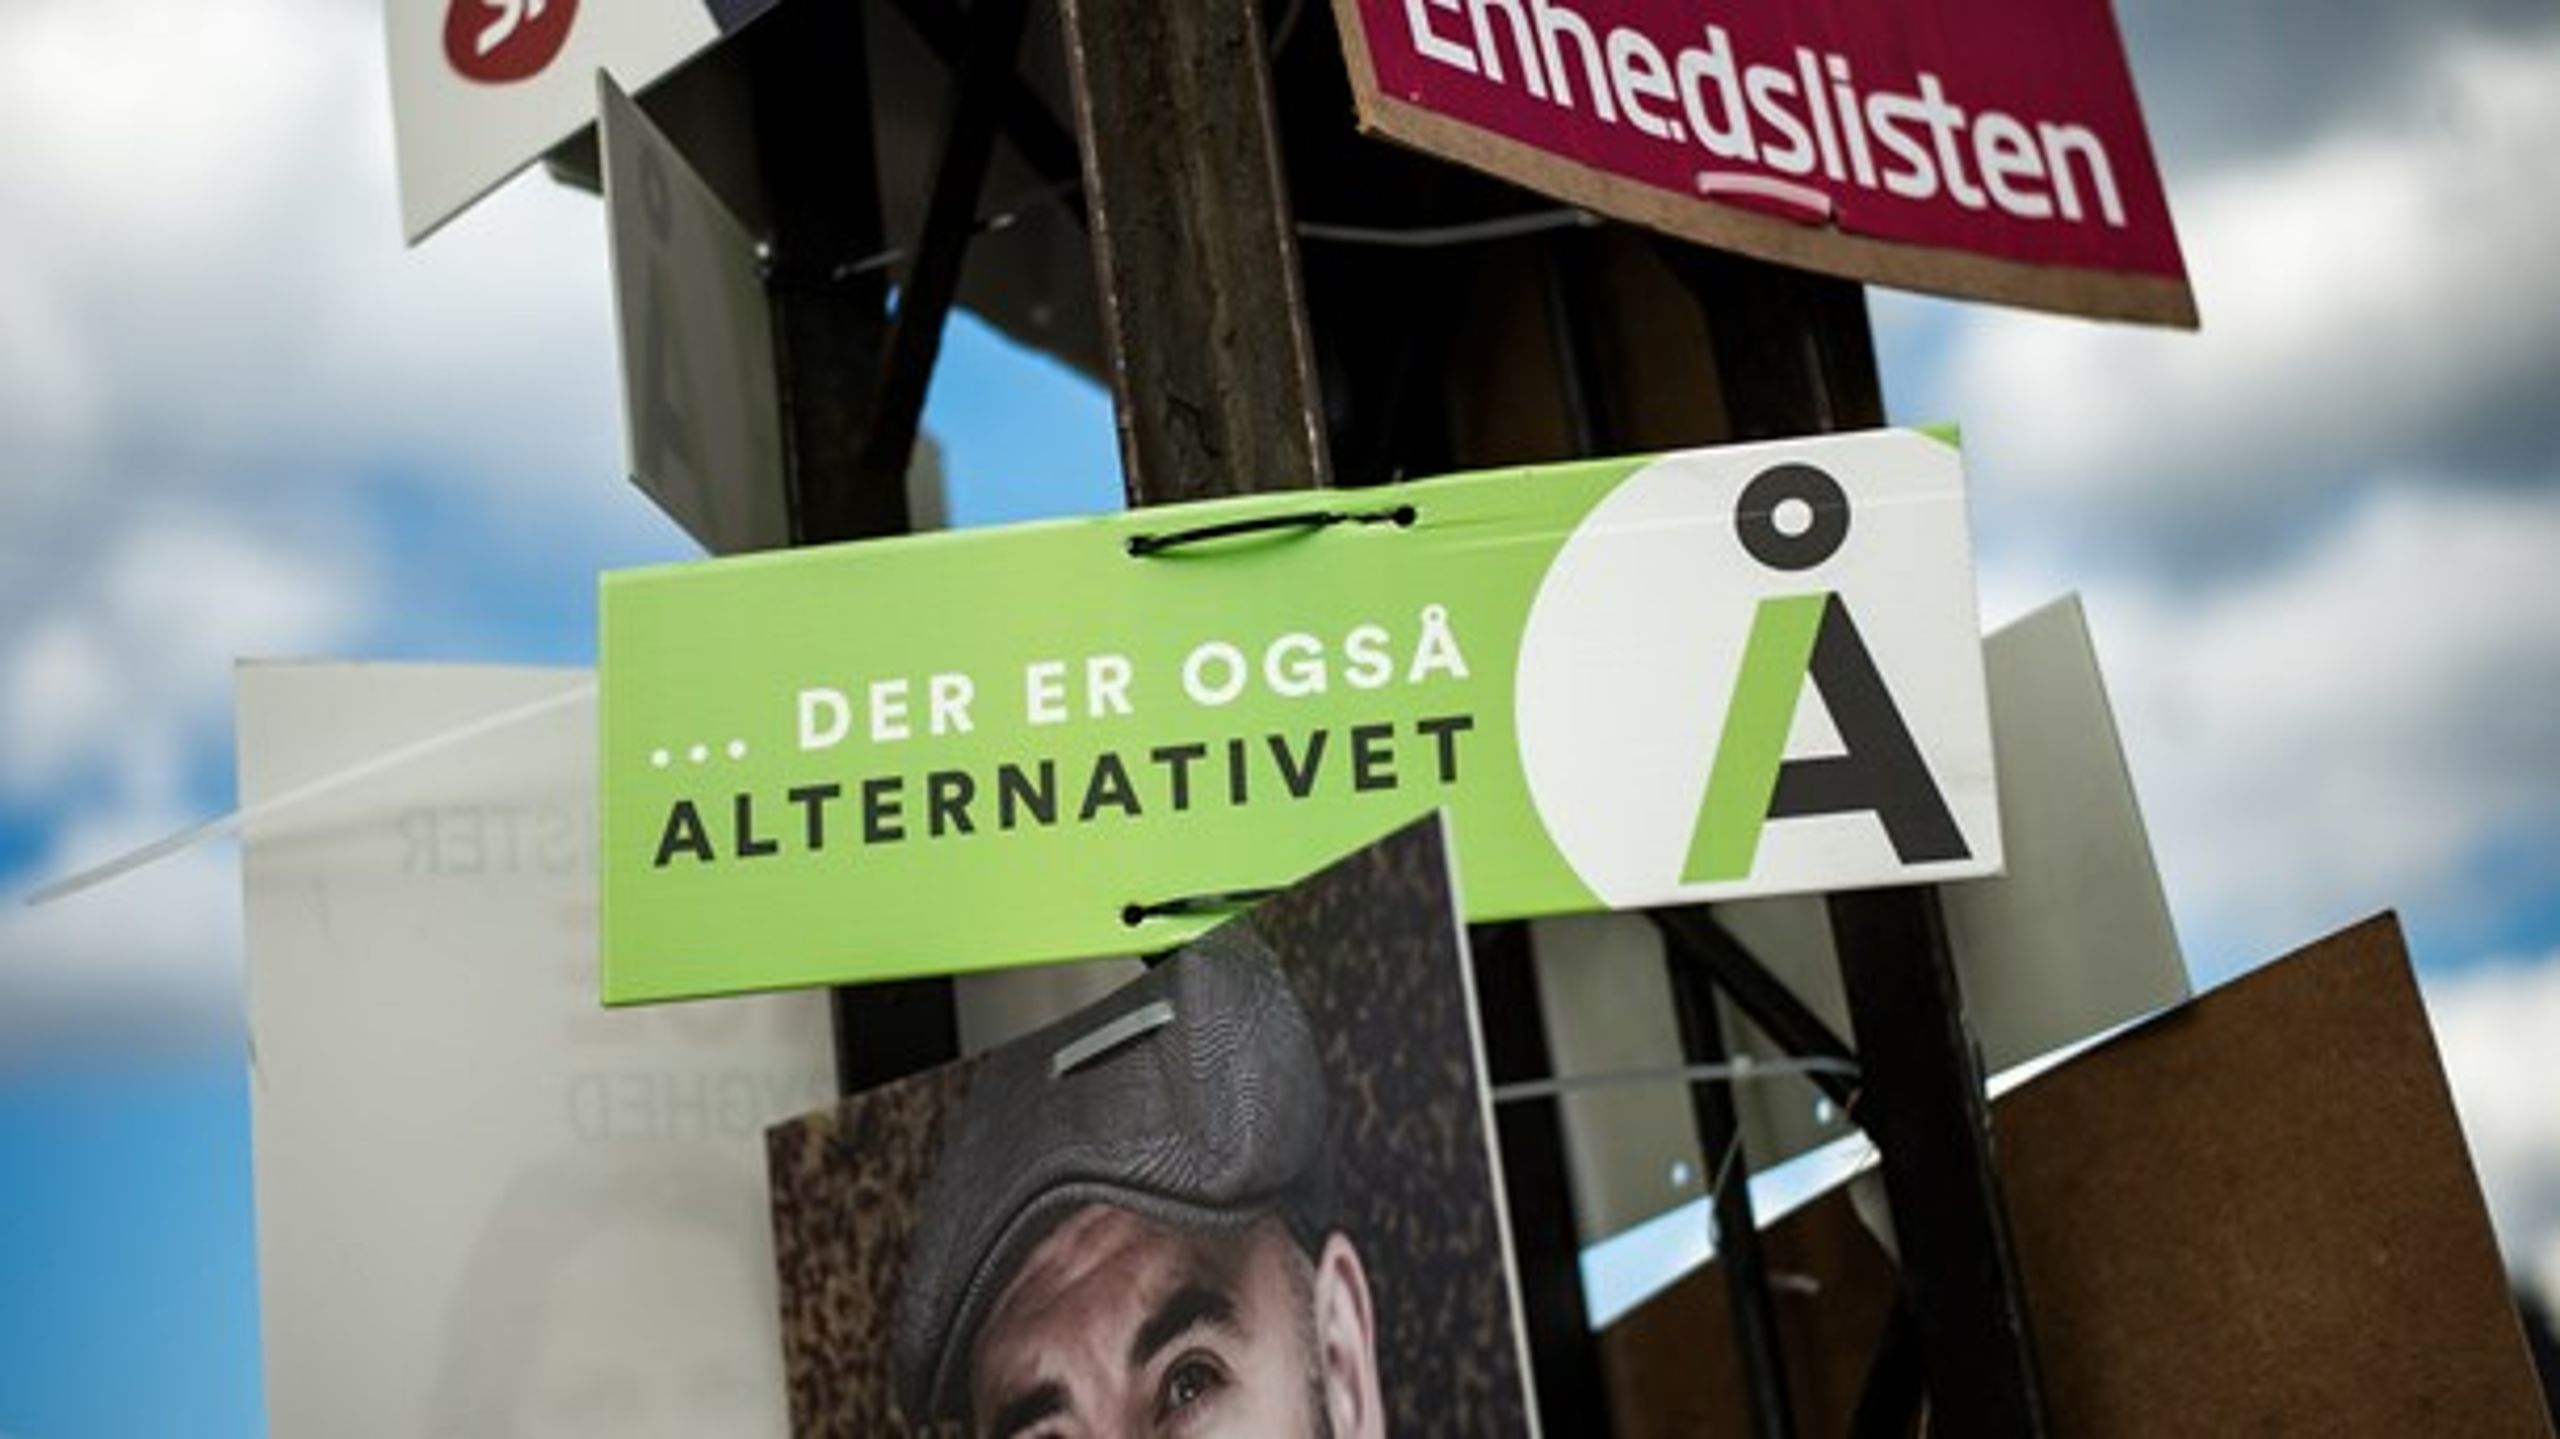 Uffe Elbæks parti er plaget af intern uro på grund af en sag om krænkelse og en overdreven festkultur.